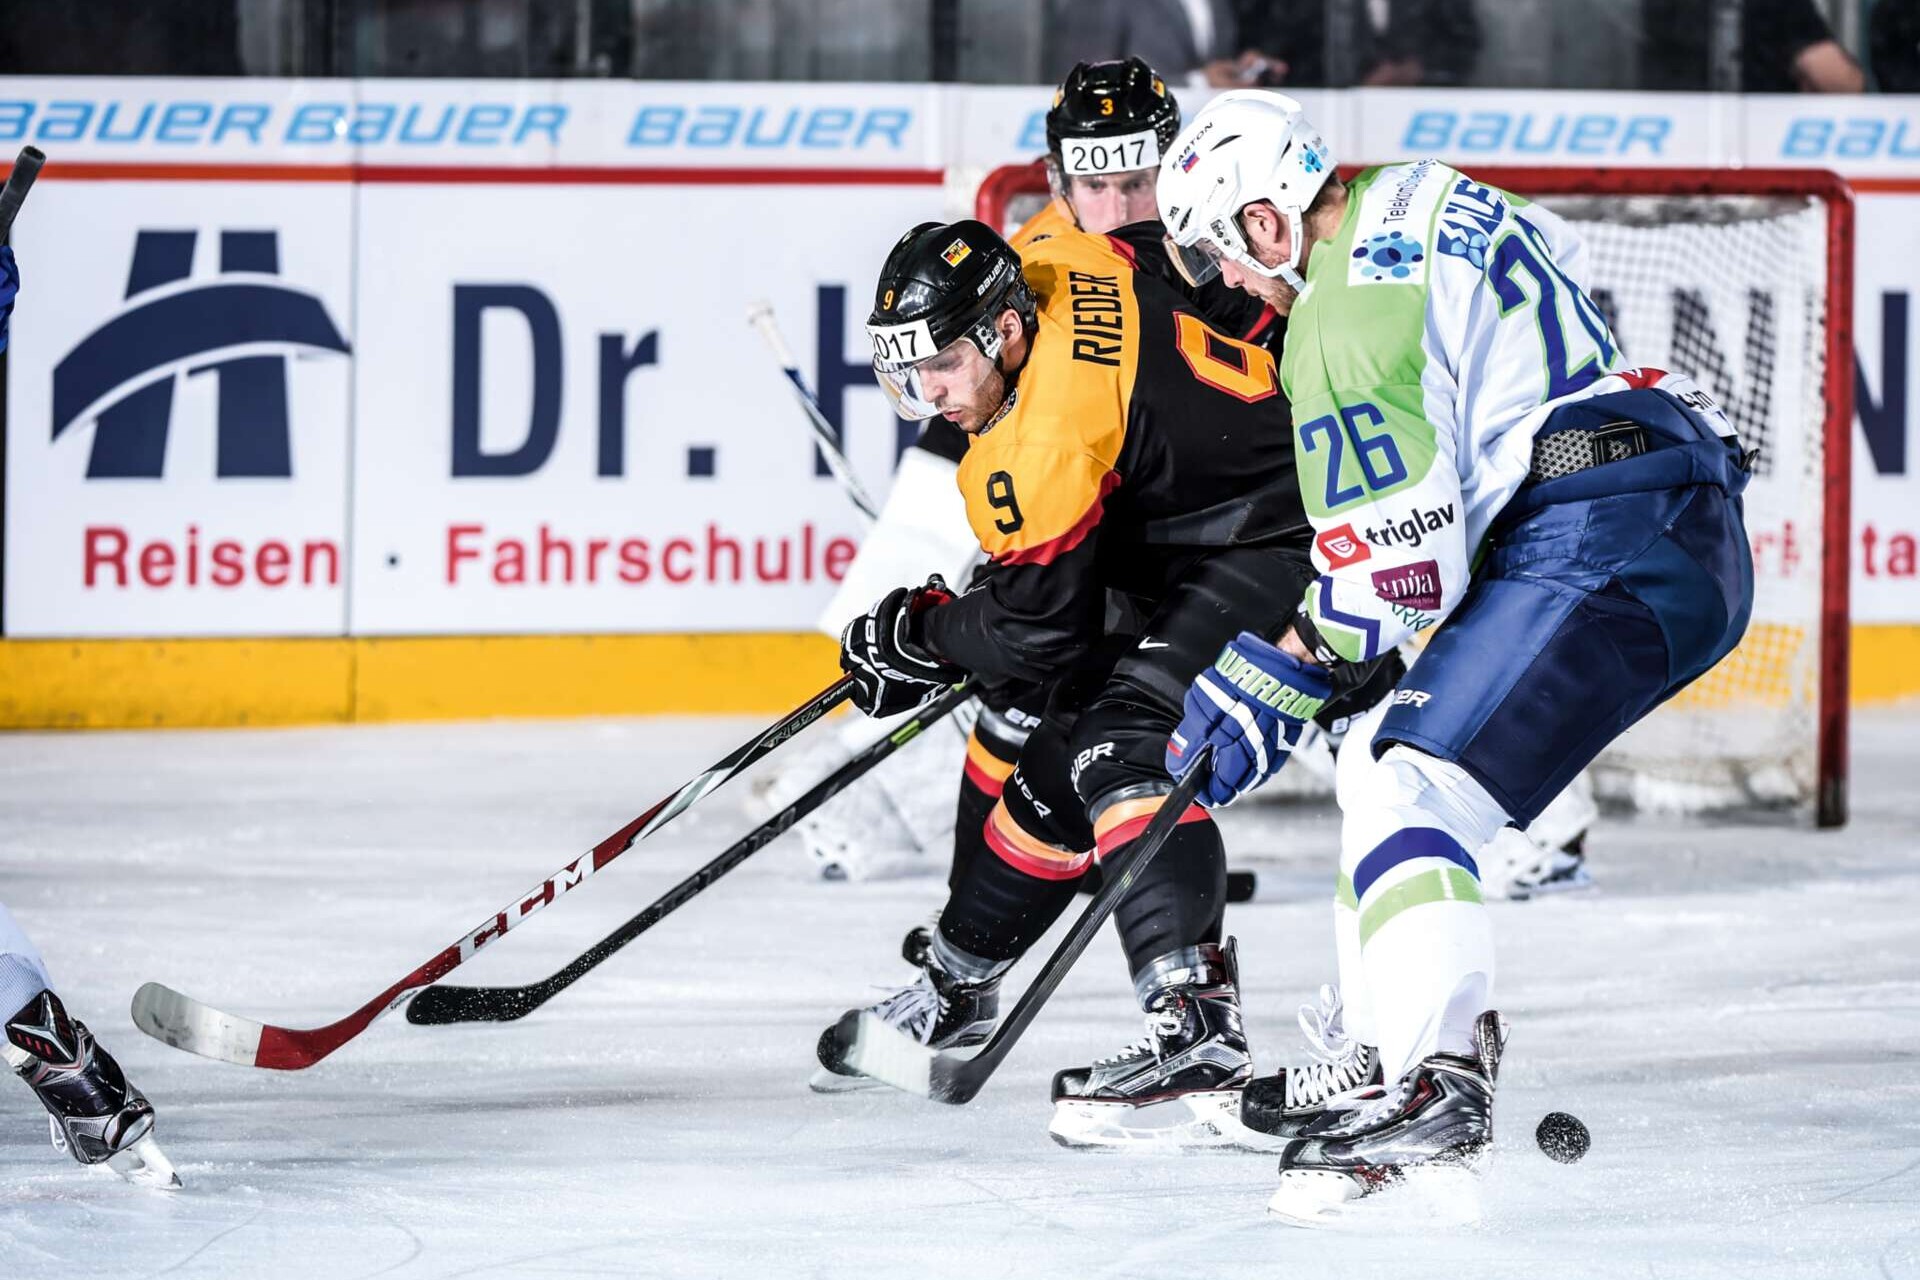 Eishockey-Profi Thomas Rieder im Duell mit Jan Urbas beim Länderspiel zwischen Deutschland und Slowenien, 29.04.2015